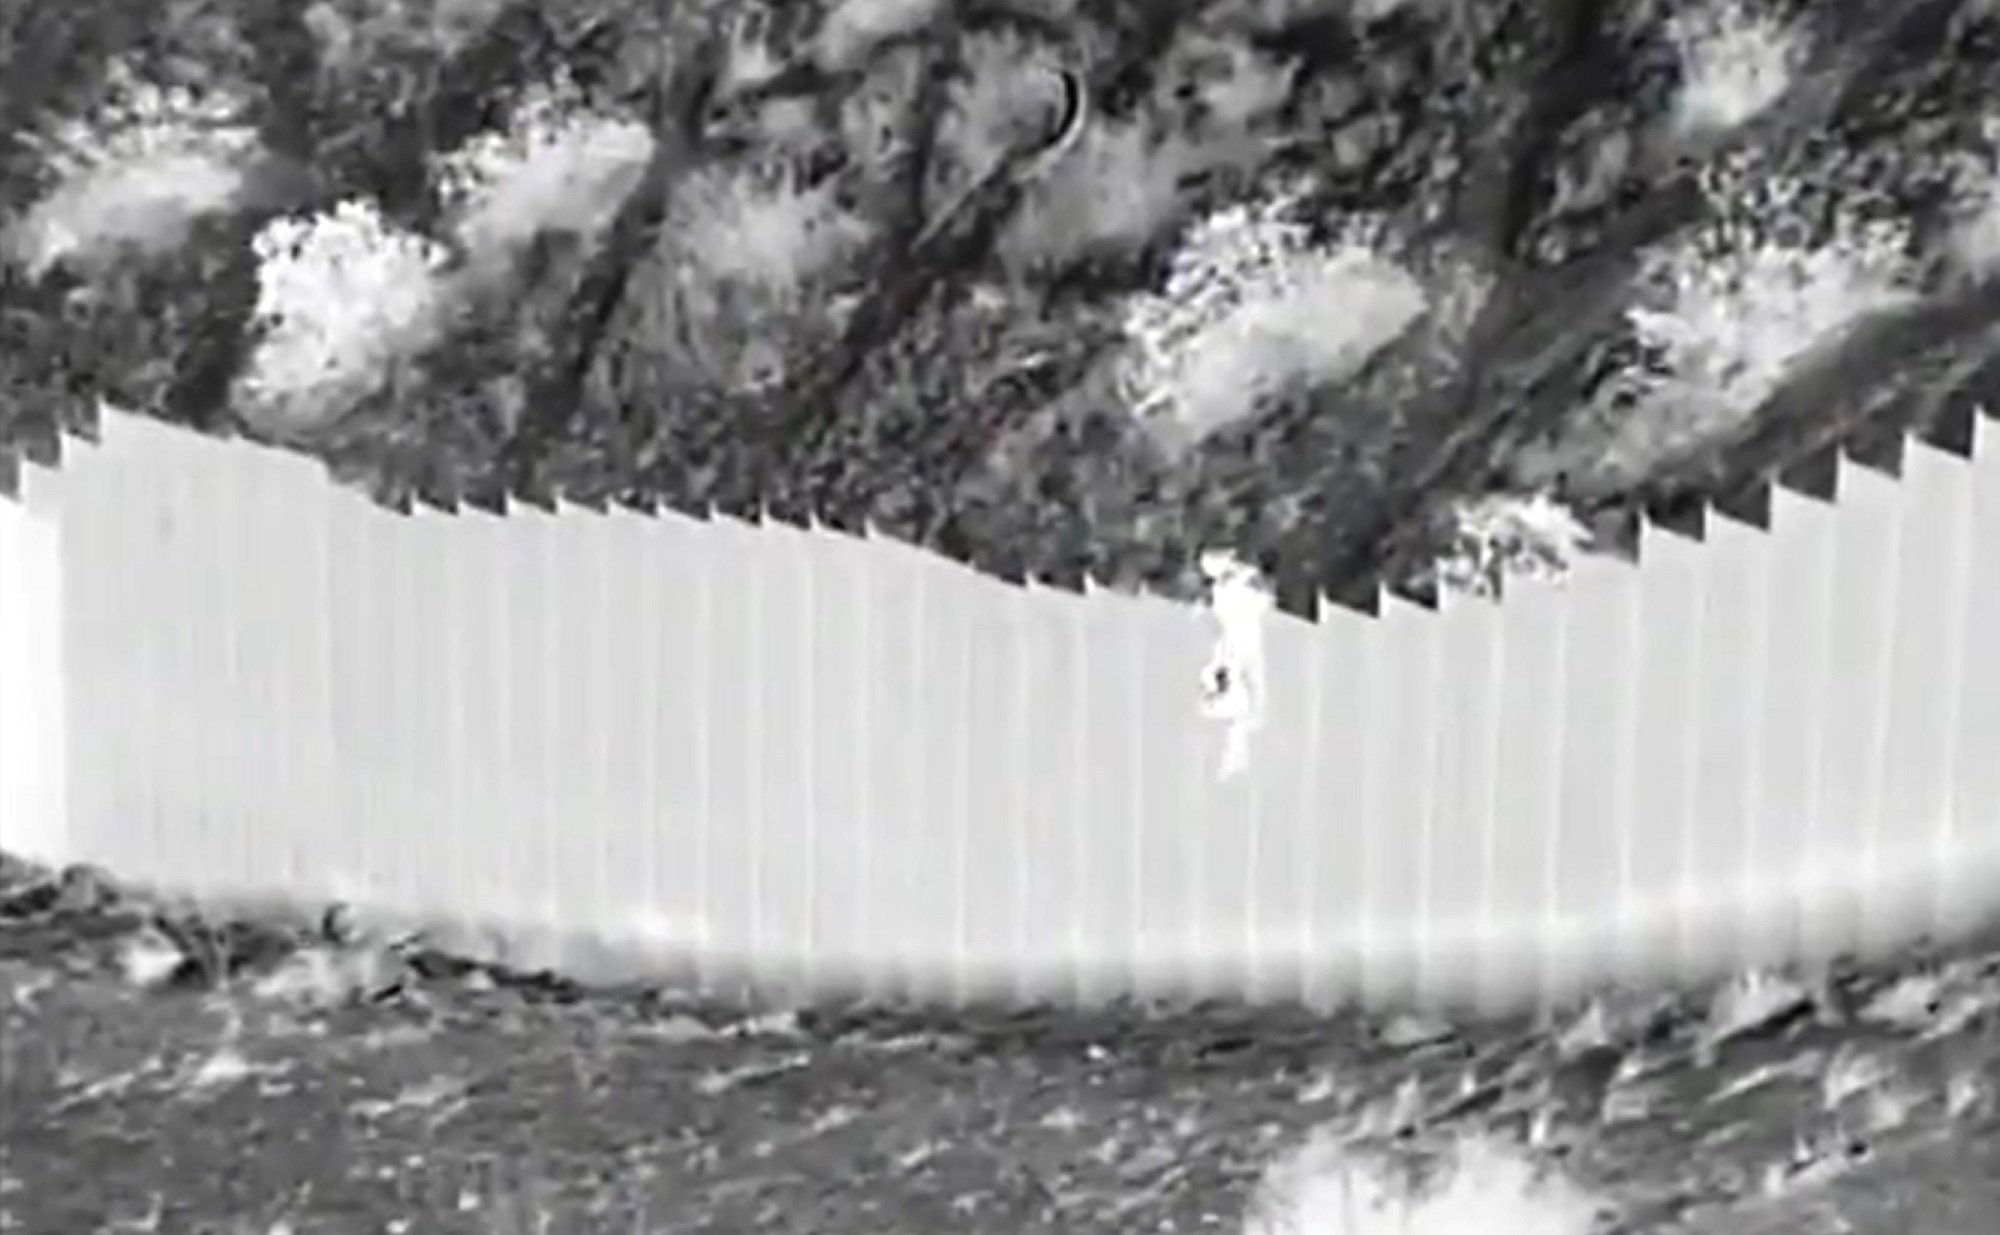 Vídeo | Així llancen dues menors des del mur de Mèxic perquè entrin als EUA